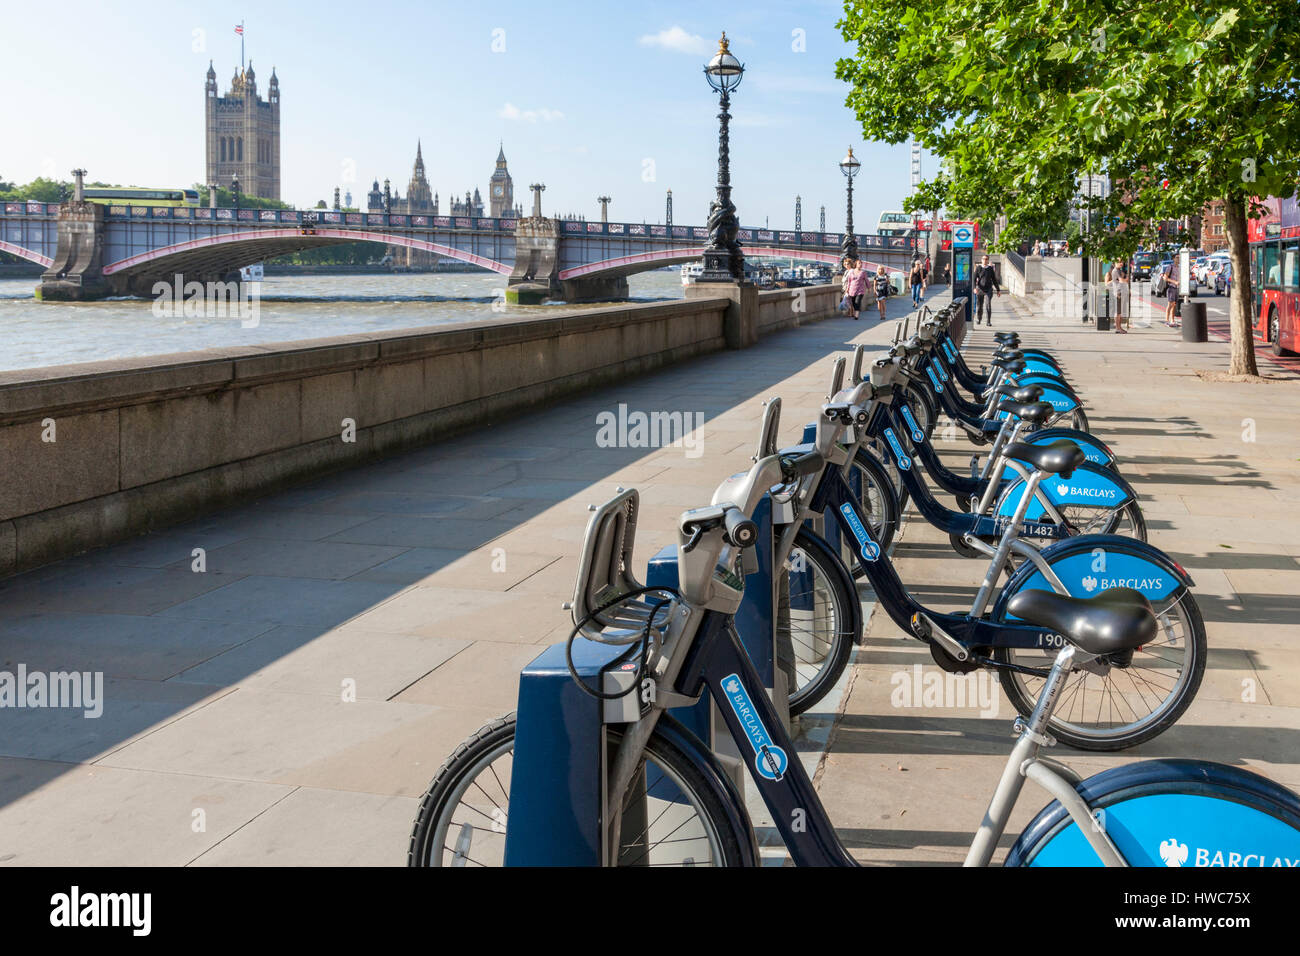 Barclays bikes, noto anche come Boris bikes. Possibilità di noleggio bici a Londra, Inghilterra, Regno Unito Foto Stock